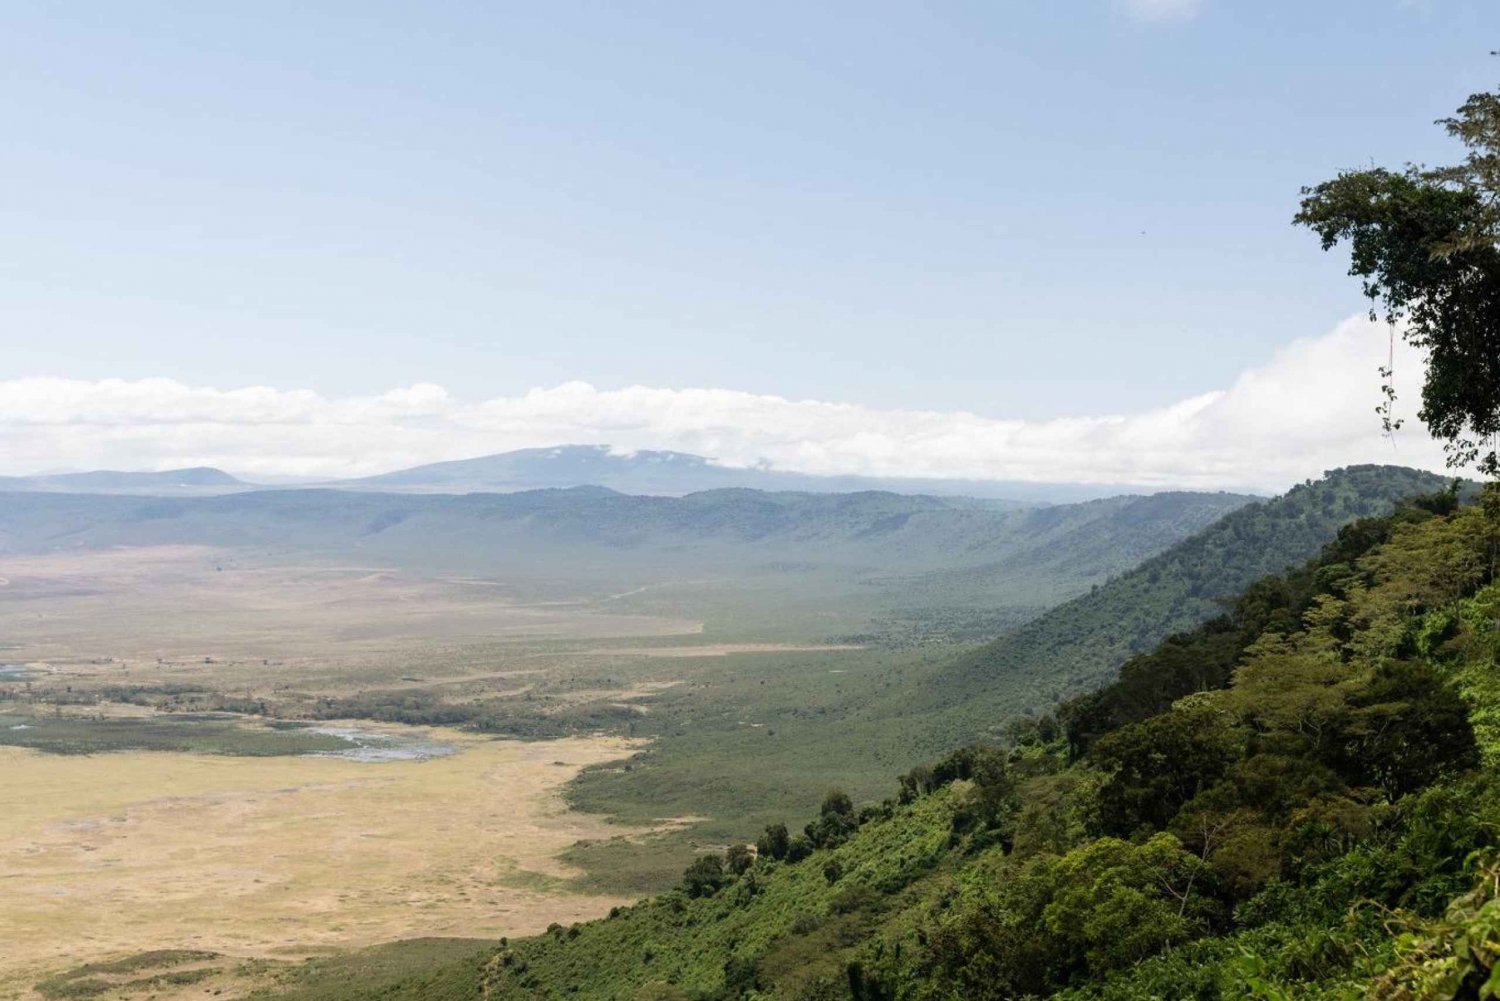 1 jour de safari conjoint dans le cratère du Ngorongoro.